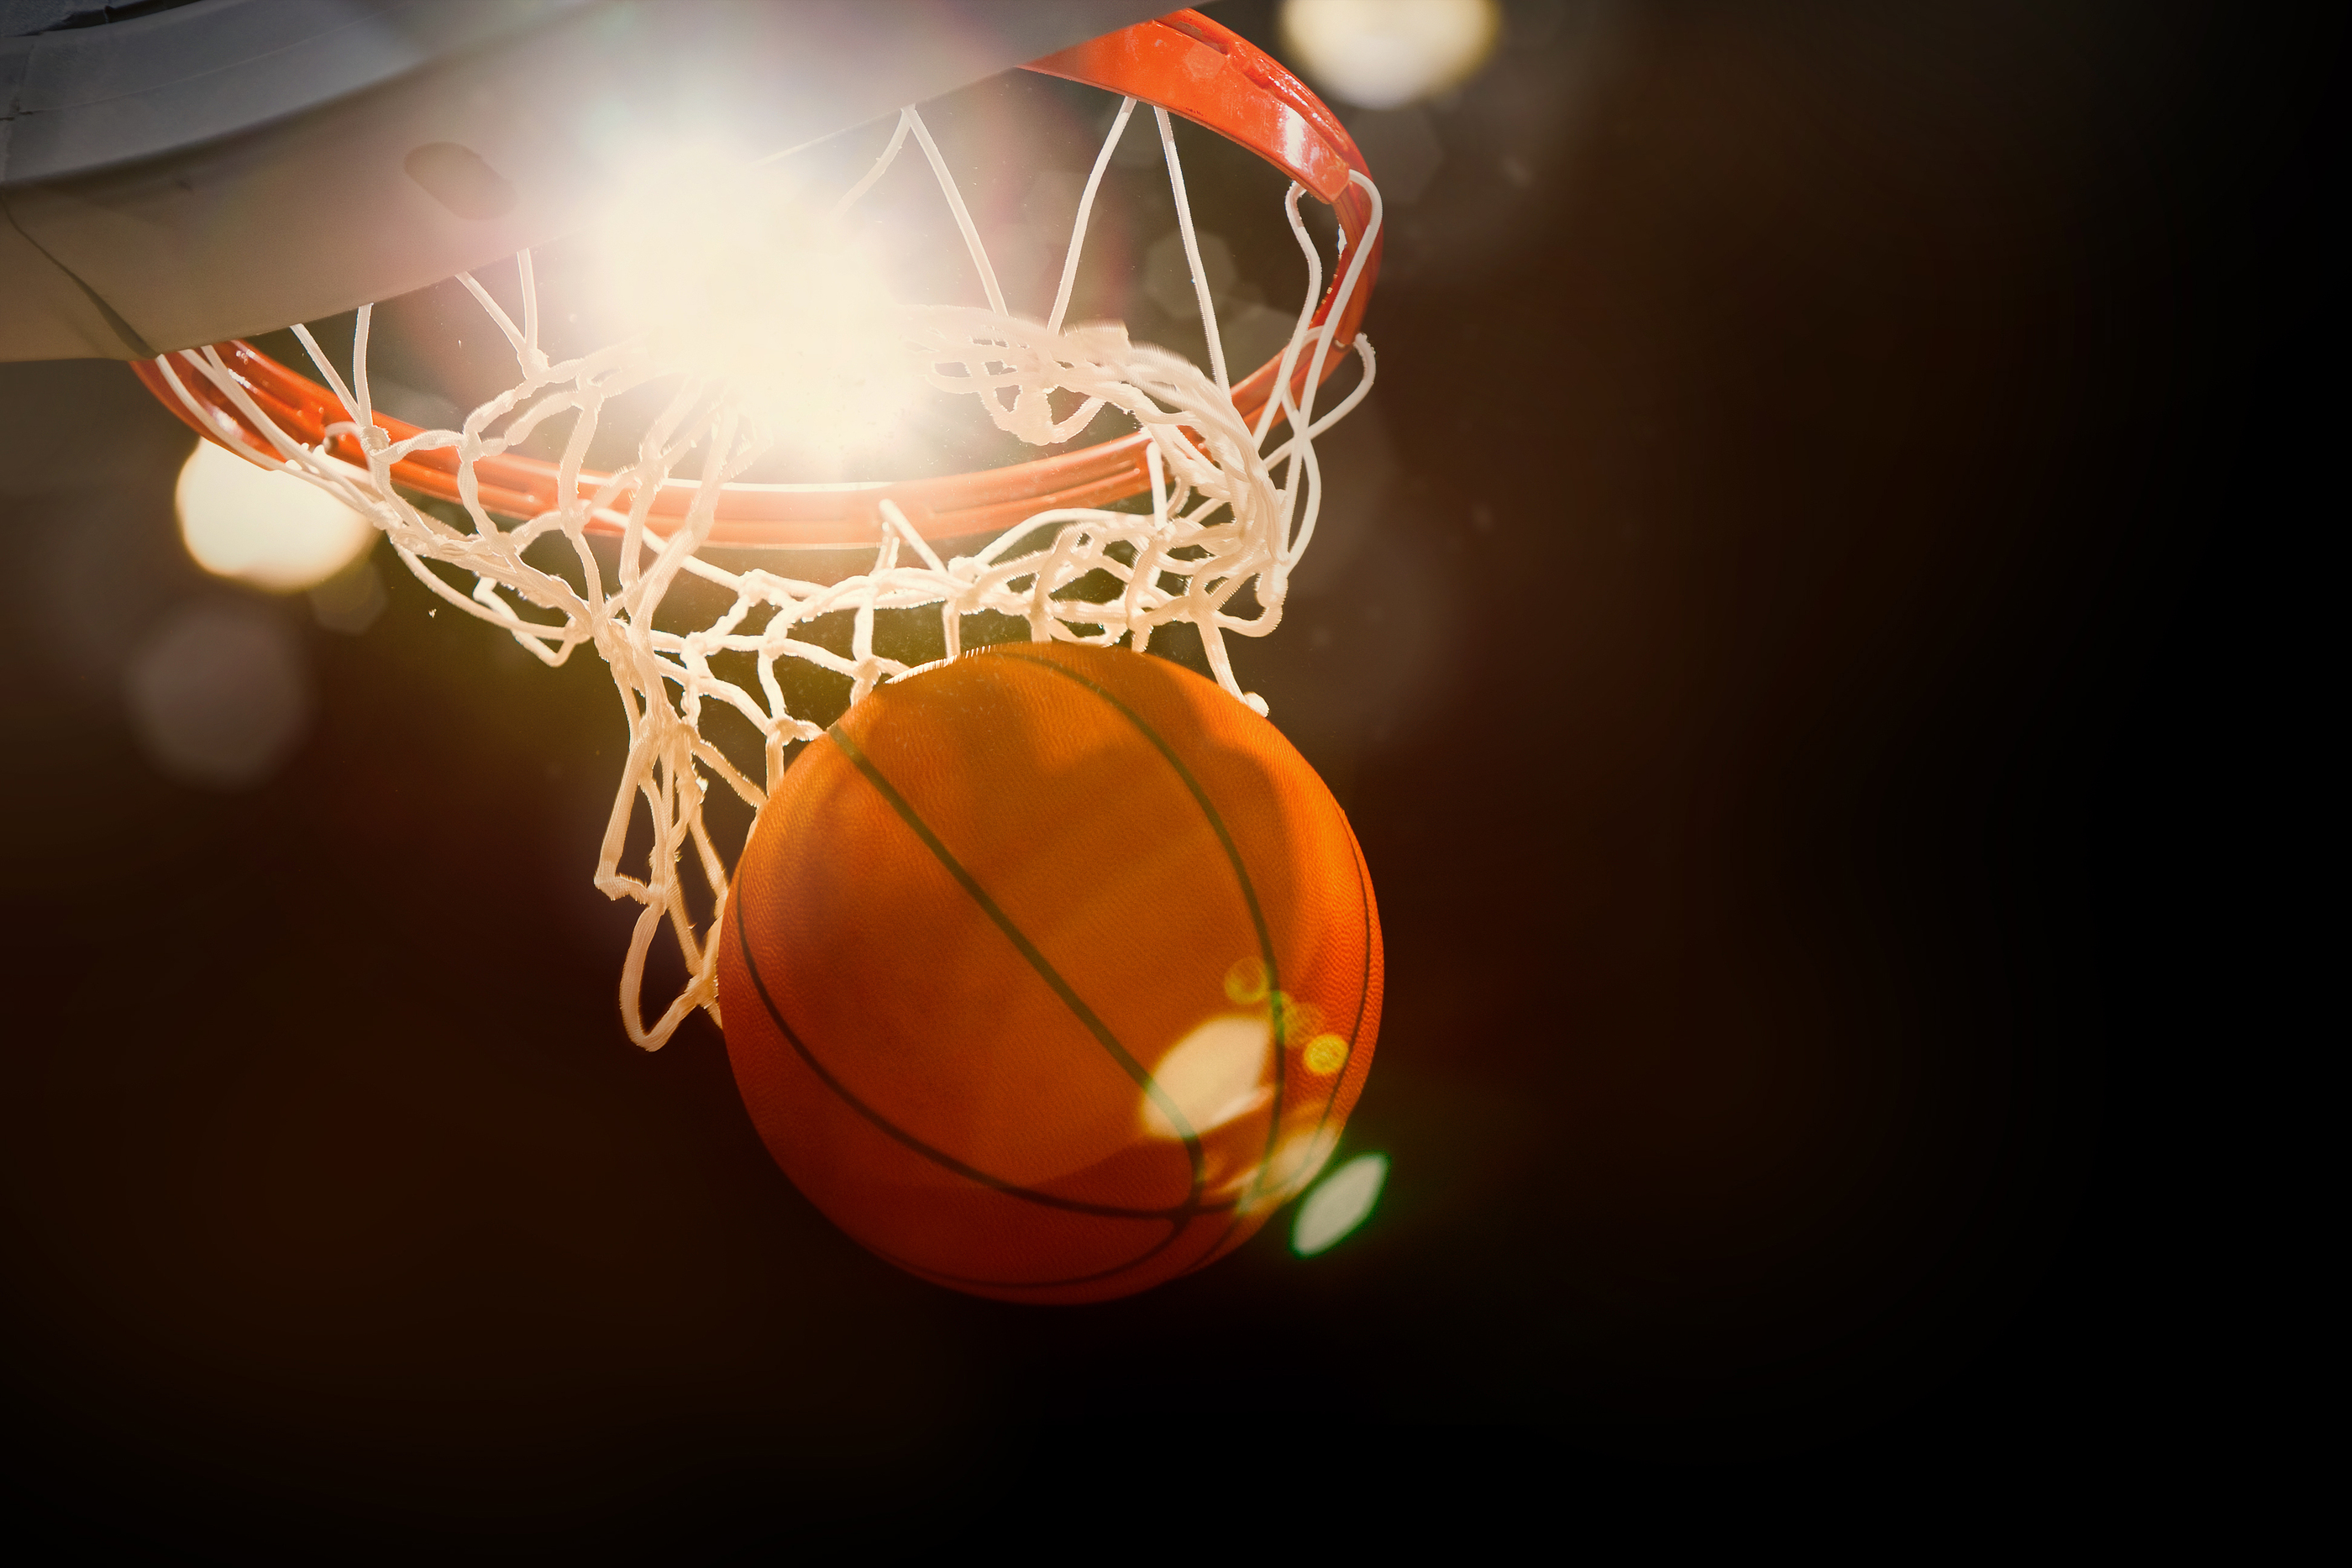 Area Basketball Results (2/4) | KCHA News